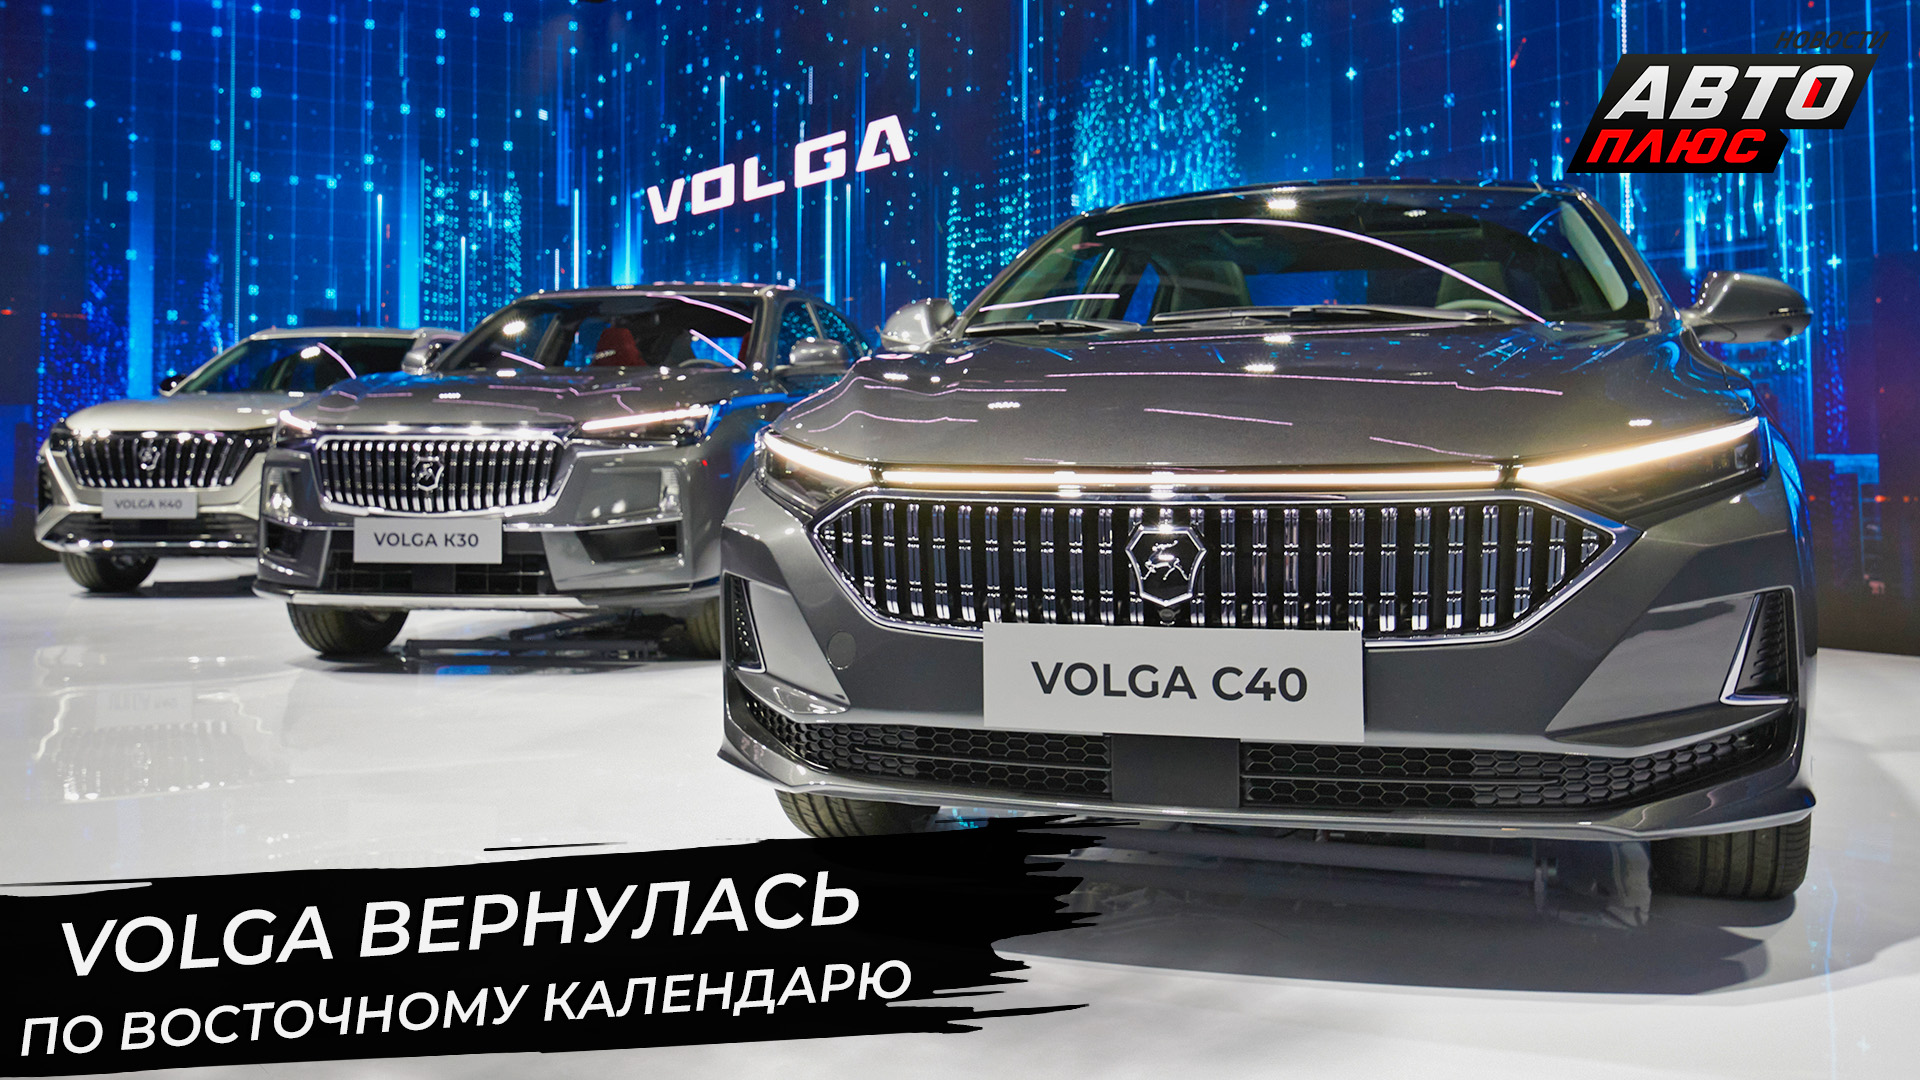 Volga вернулась по восточному календарю 📺 Новости с колёс №2928